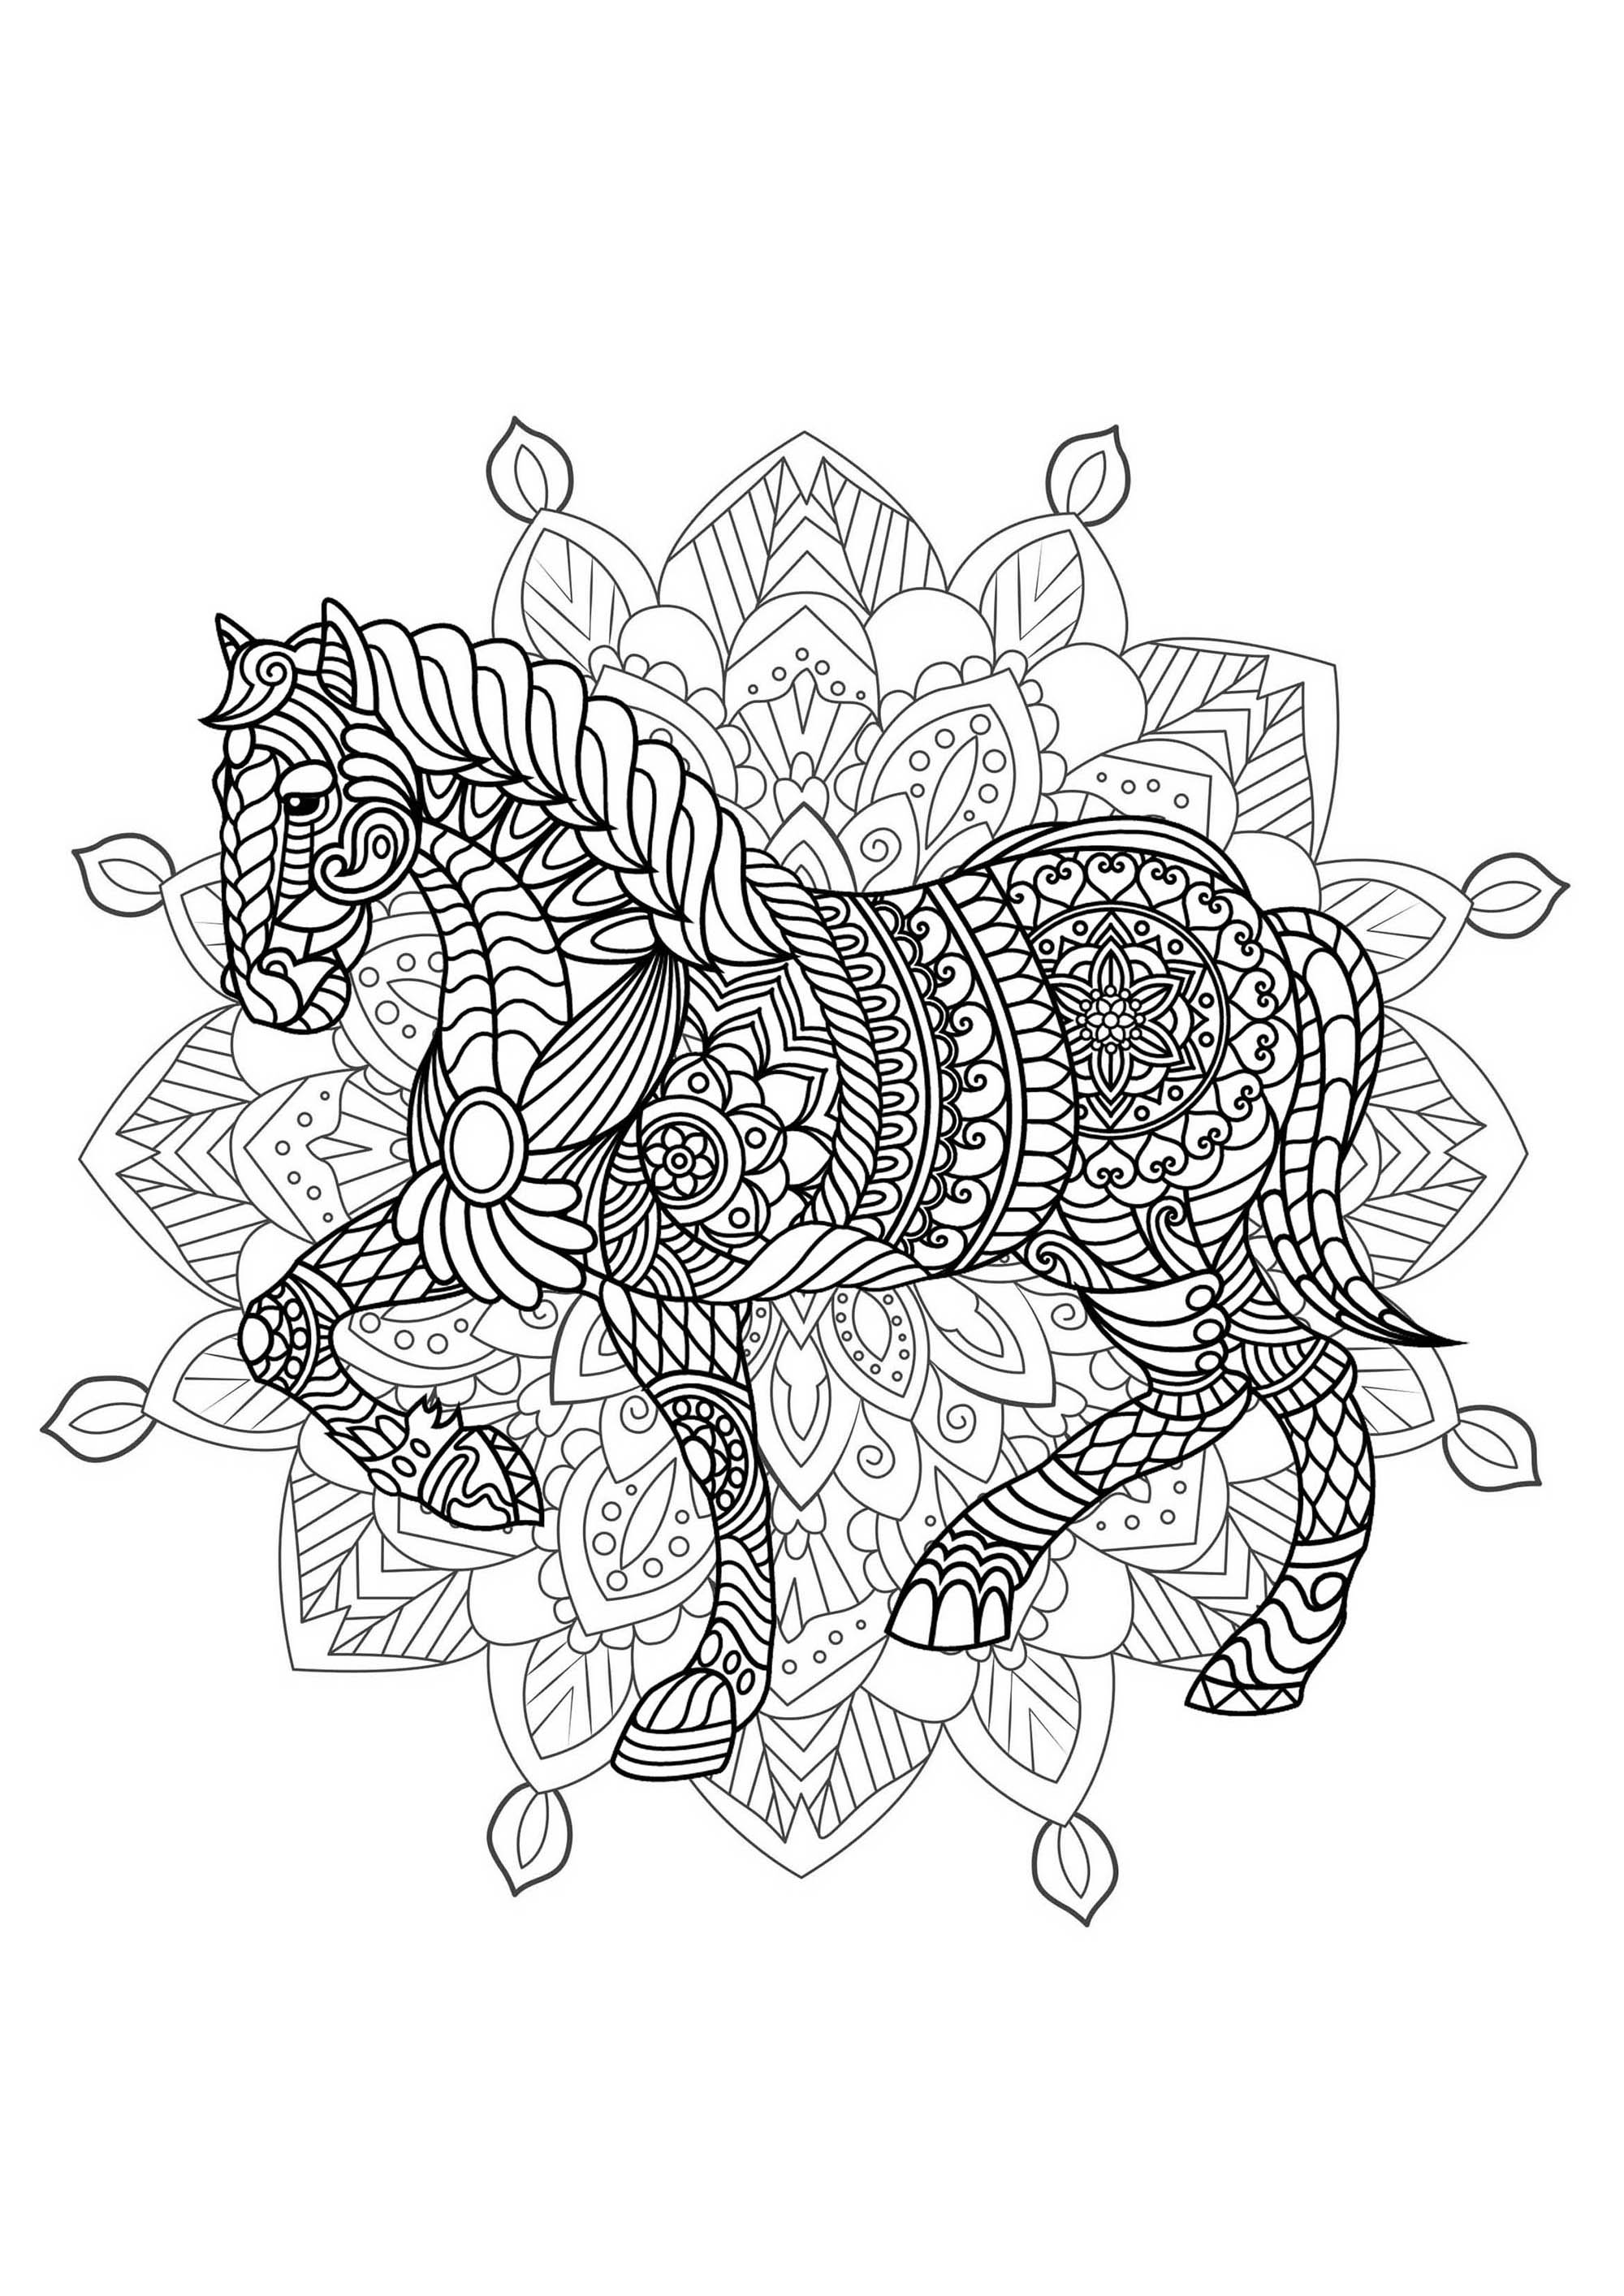 Cavallo e Mandala - Preparate pennarelli e matite per colorare questo Mandala pieno di piccoli dettagli e aree interconnesse.